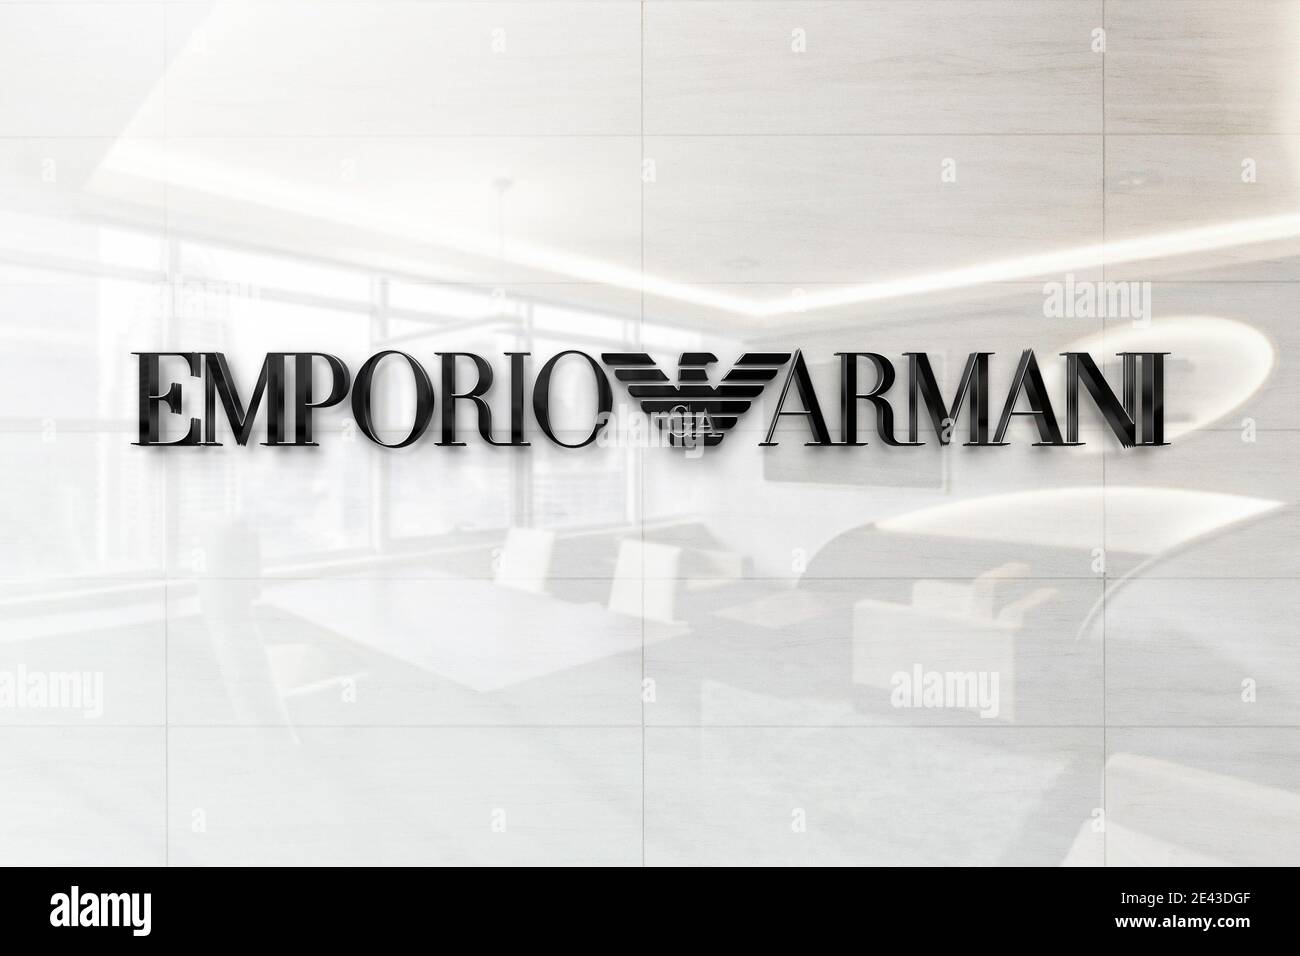 emporio armani logo on wall Stock Photo - Alamy